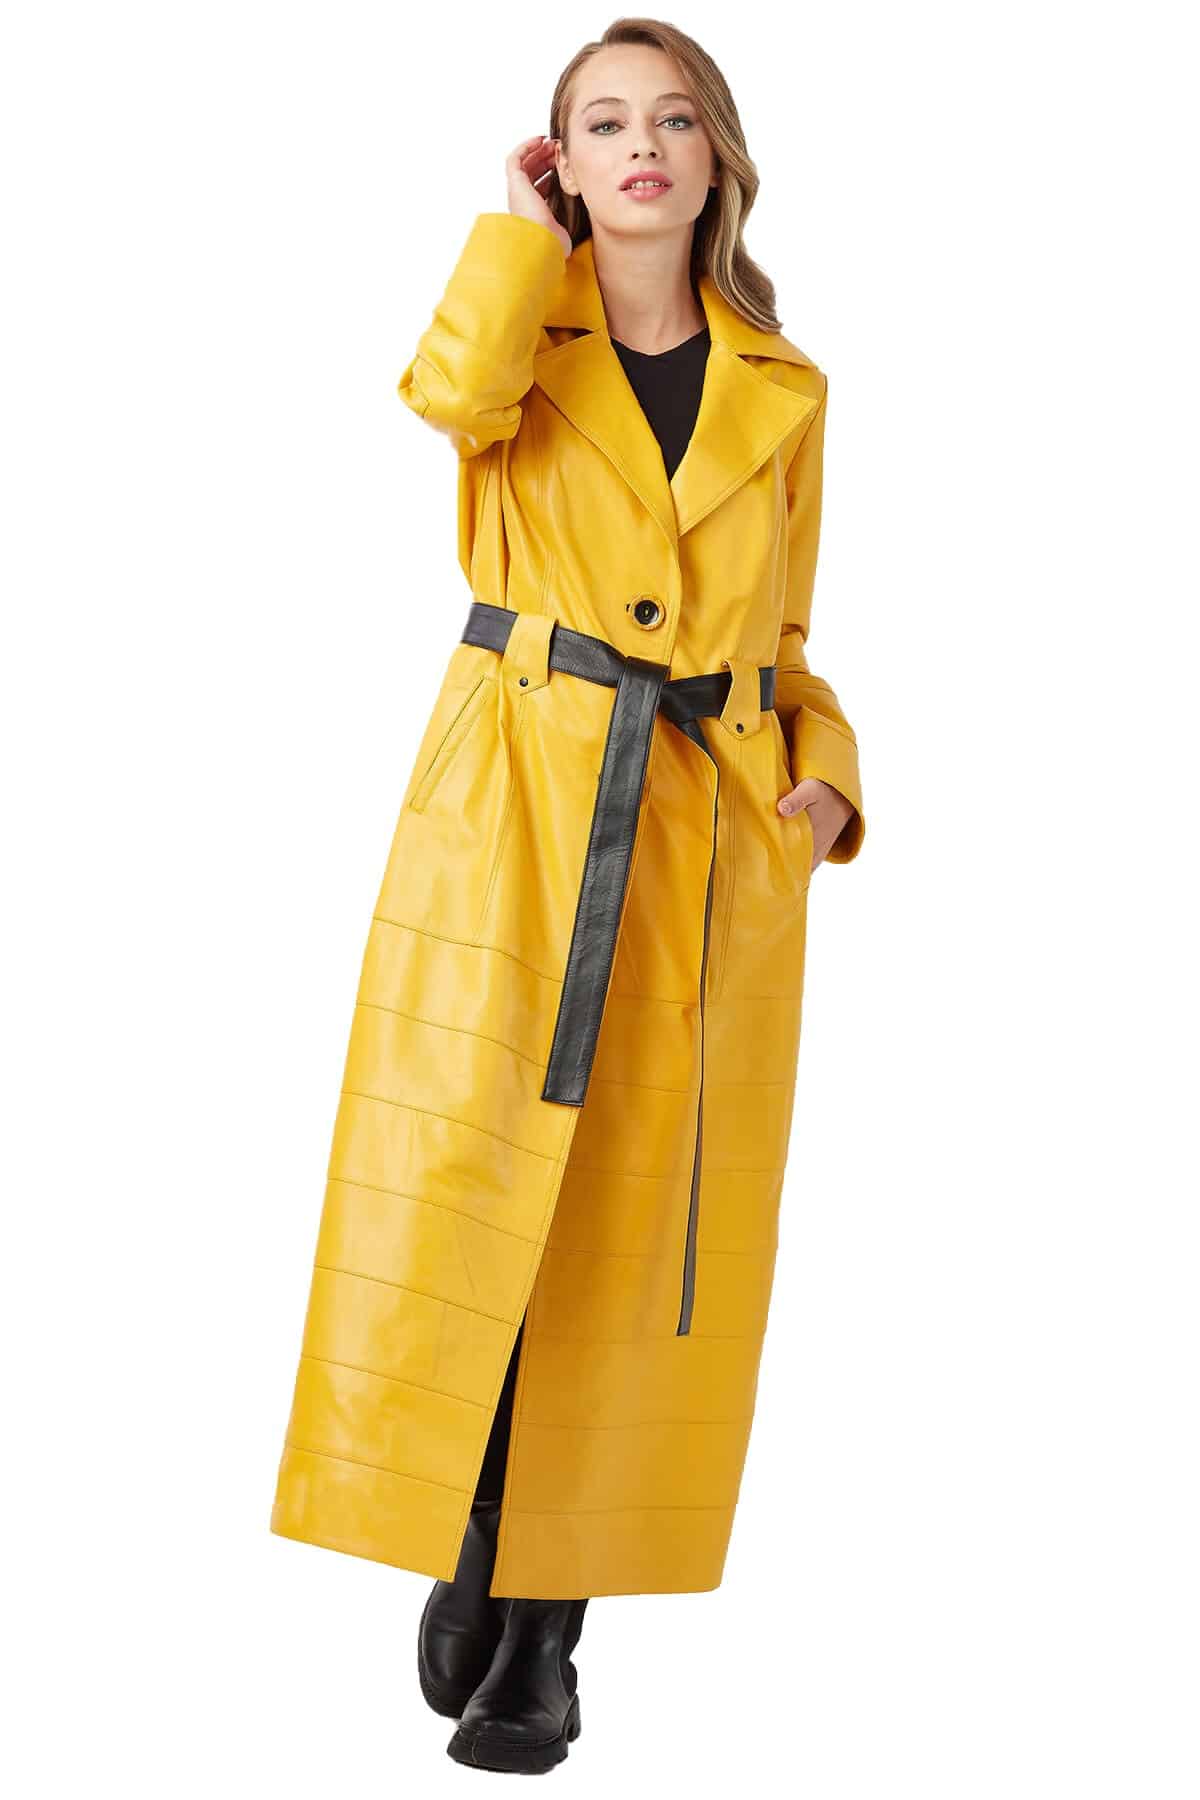 rita-genuine-leather-womens-topcoat-mustard-2